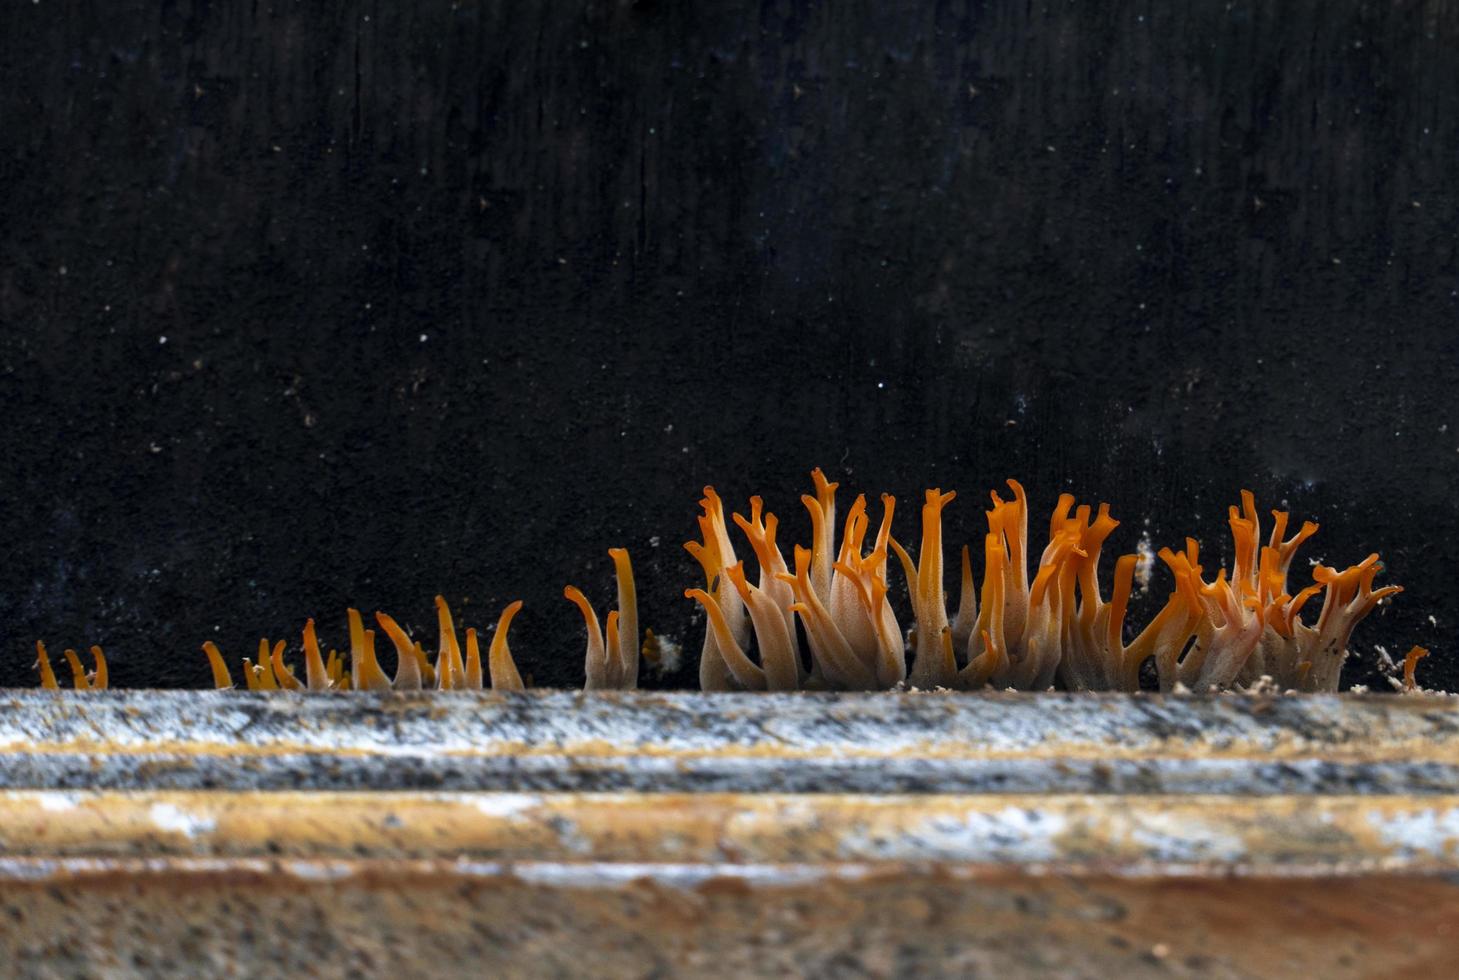 abstrakt och suddig av svamp orange stam som växer i hörnen av våta träkanter. foto